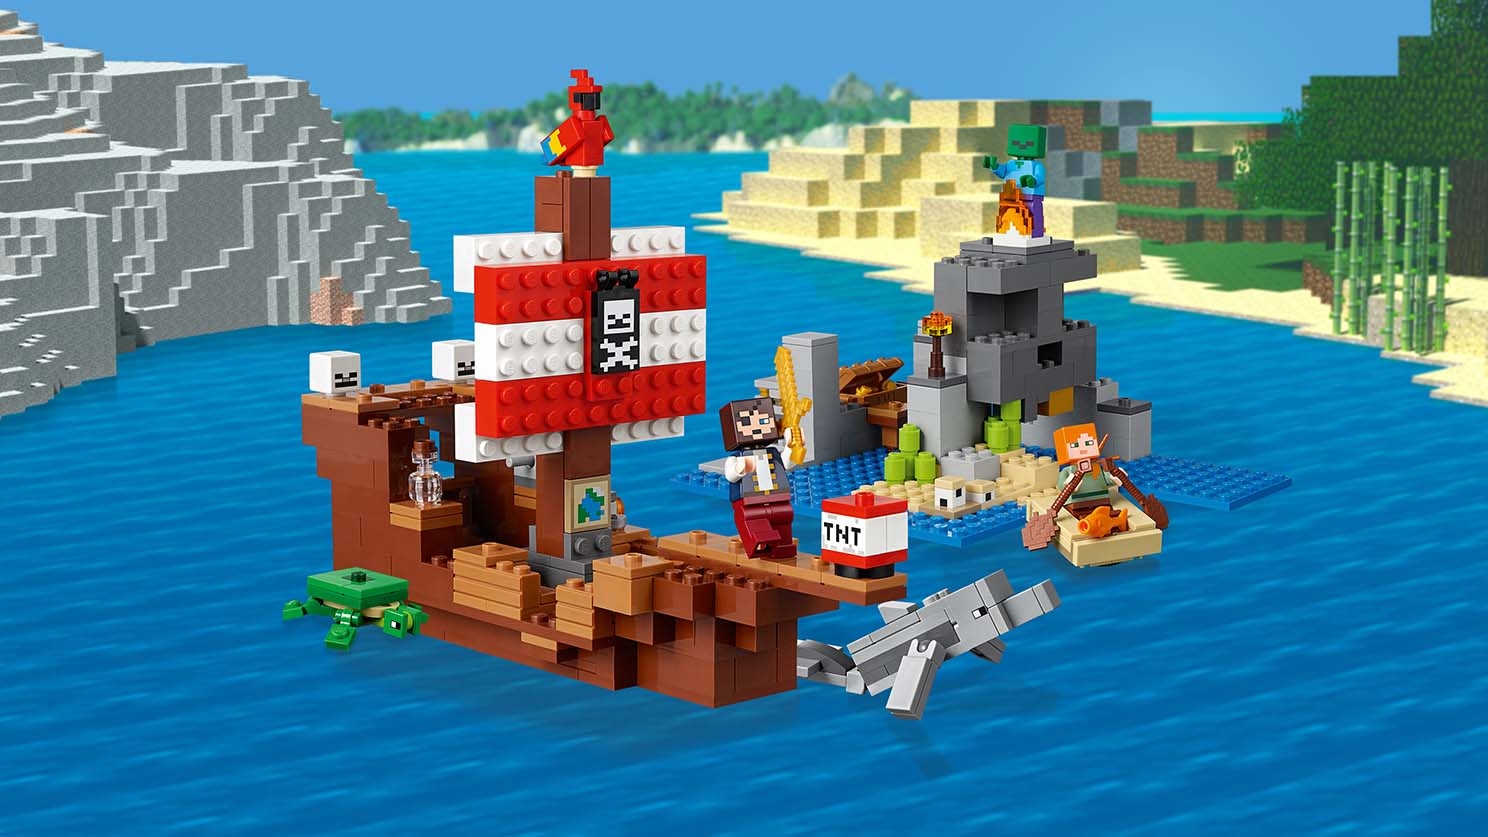 hielo Histérico Grande The Pirate Ship Adventure 21152 - LEGO® Minecraft™ Sets - LEGO.com for kids